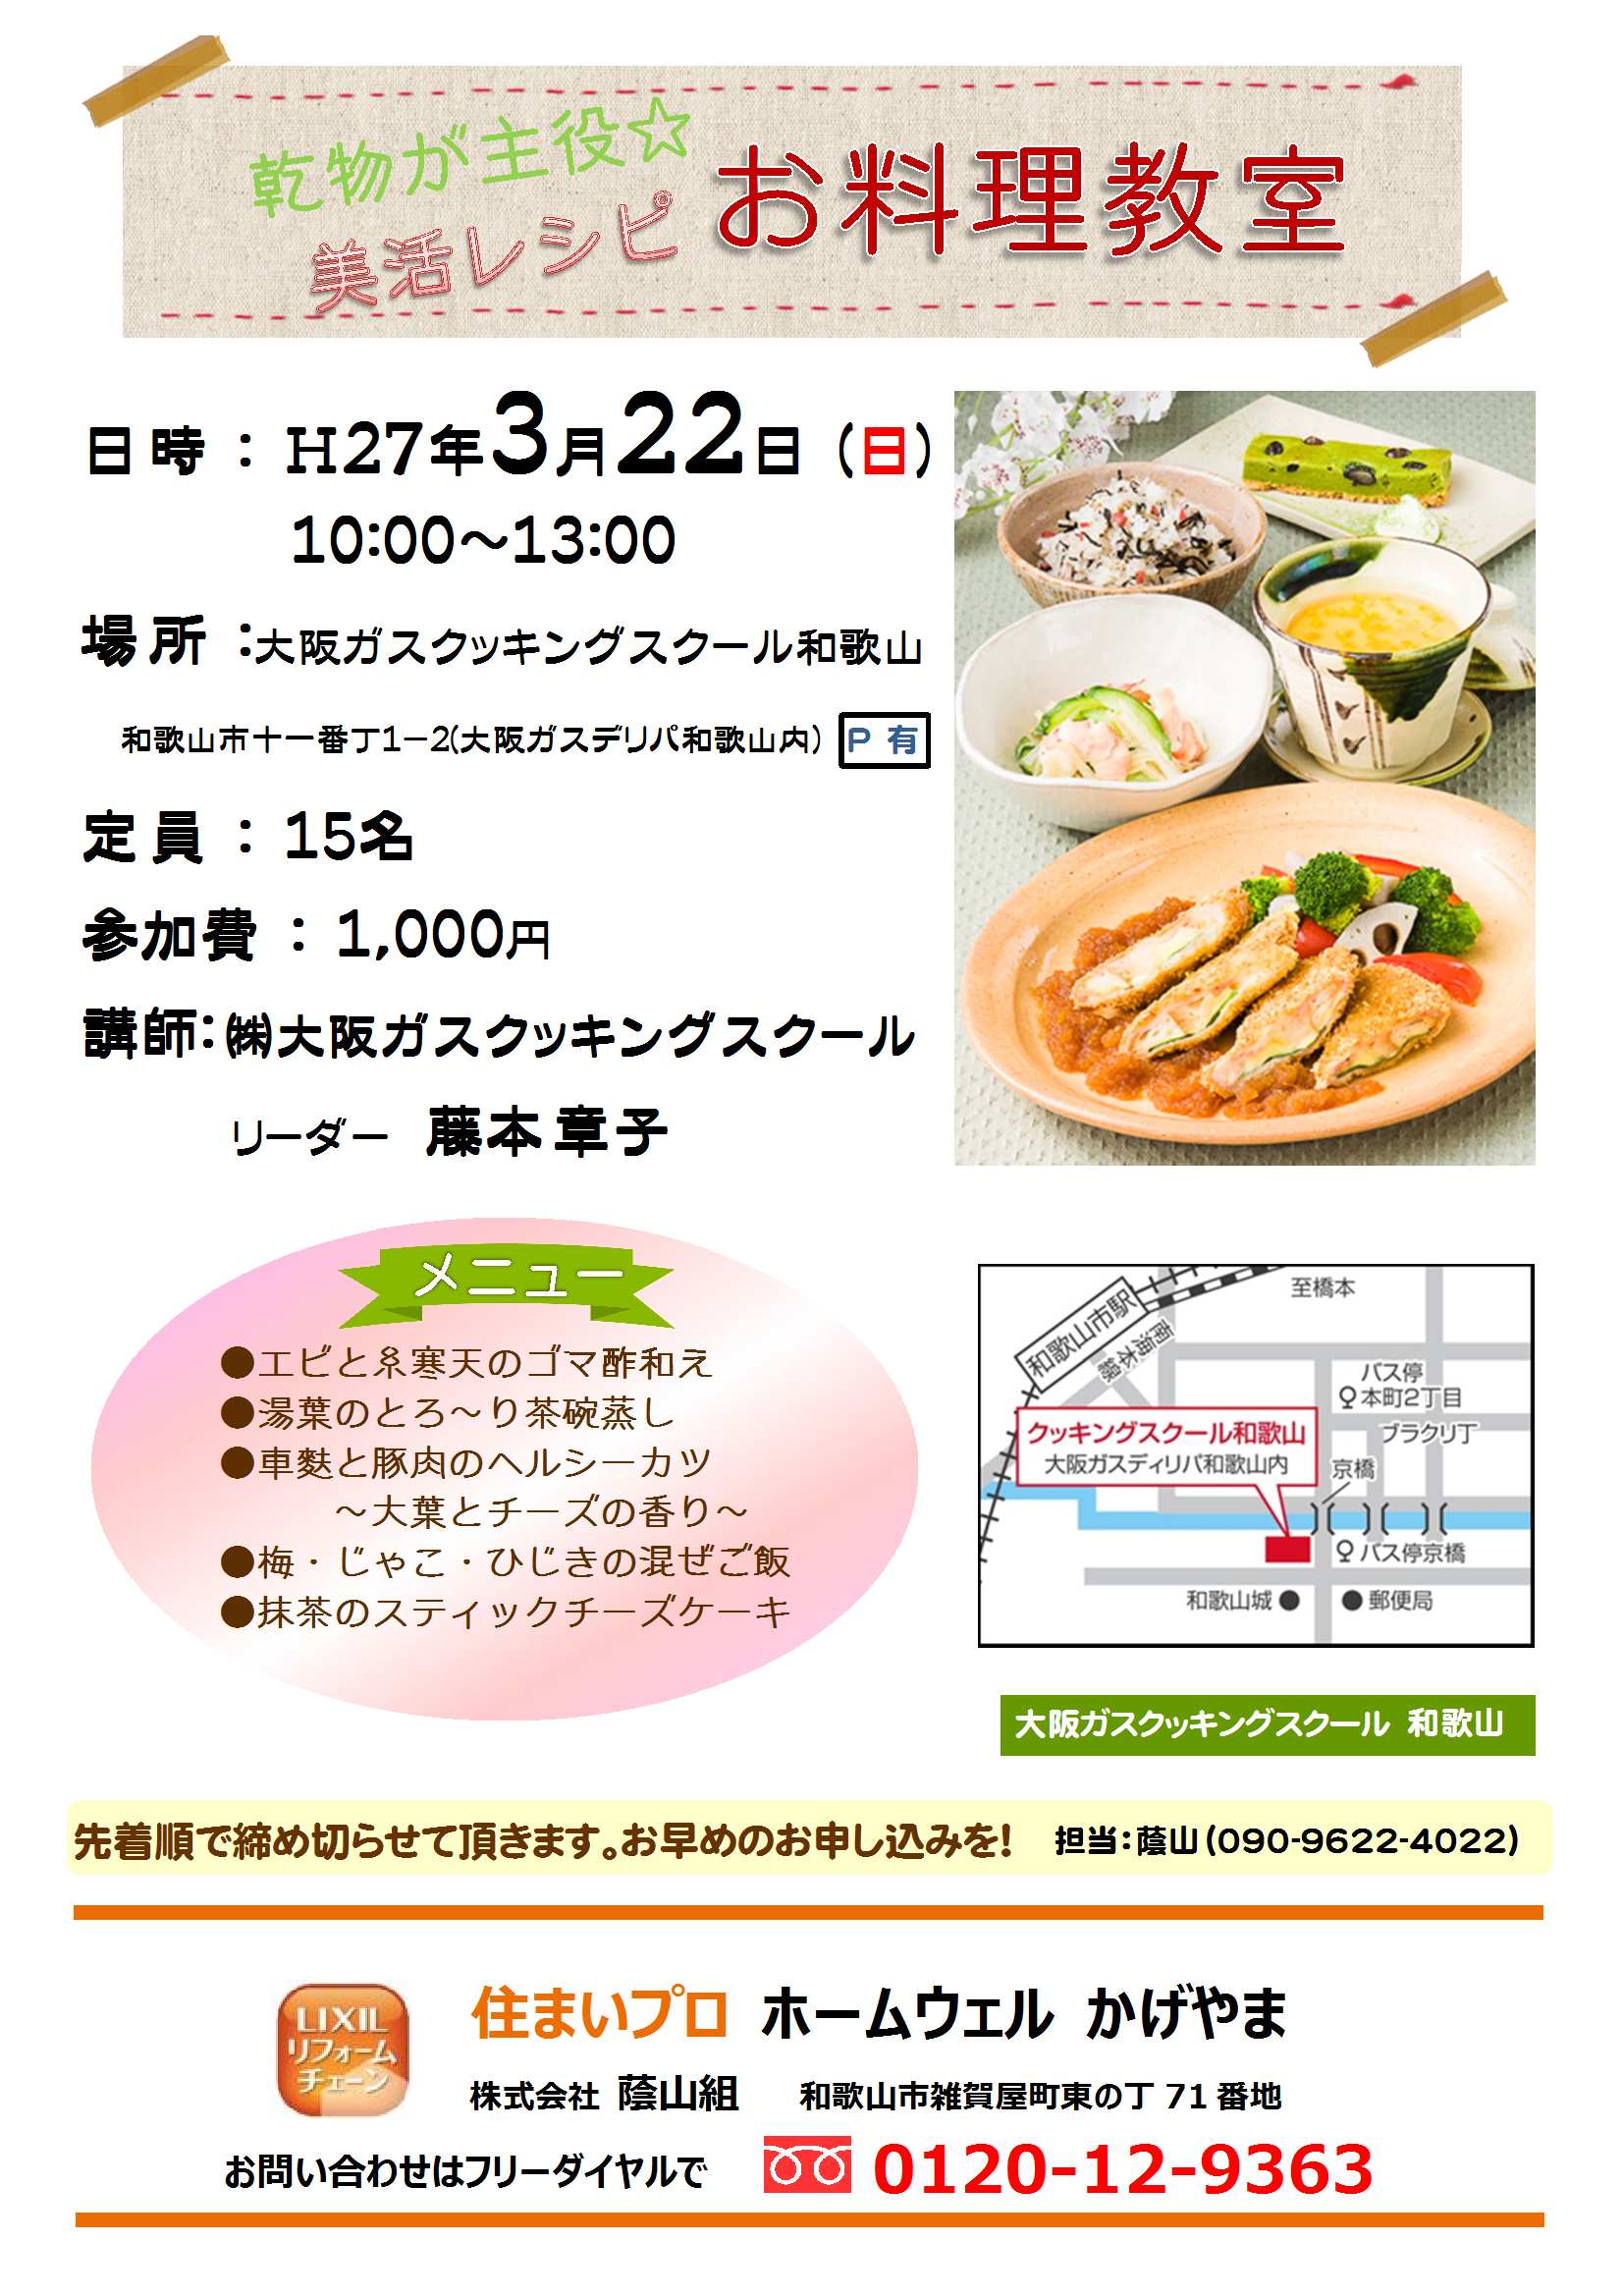 H27.3.22お料理教室(チラシ).jpg